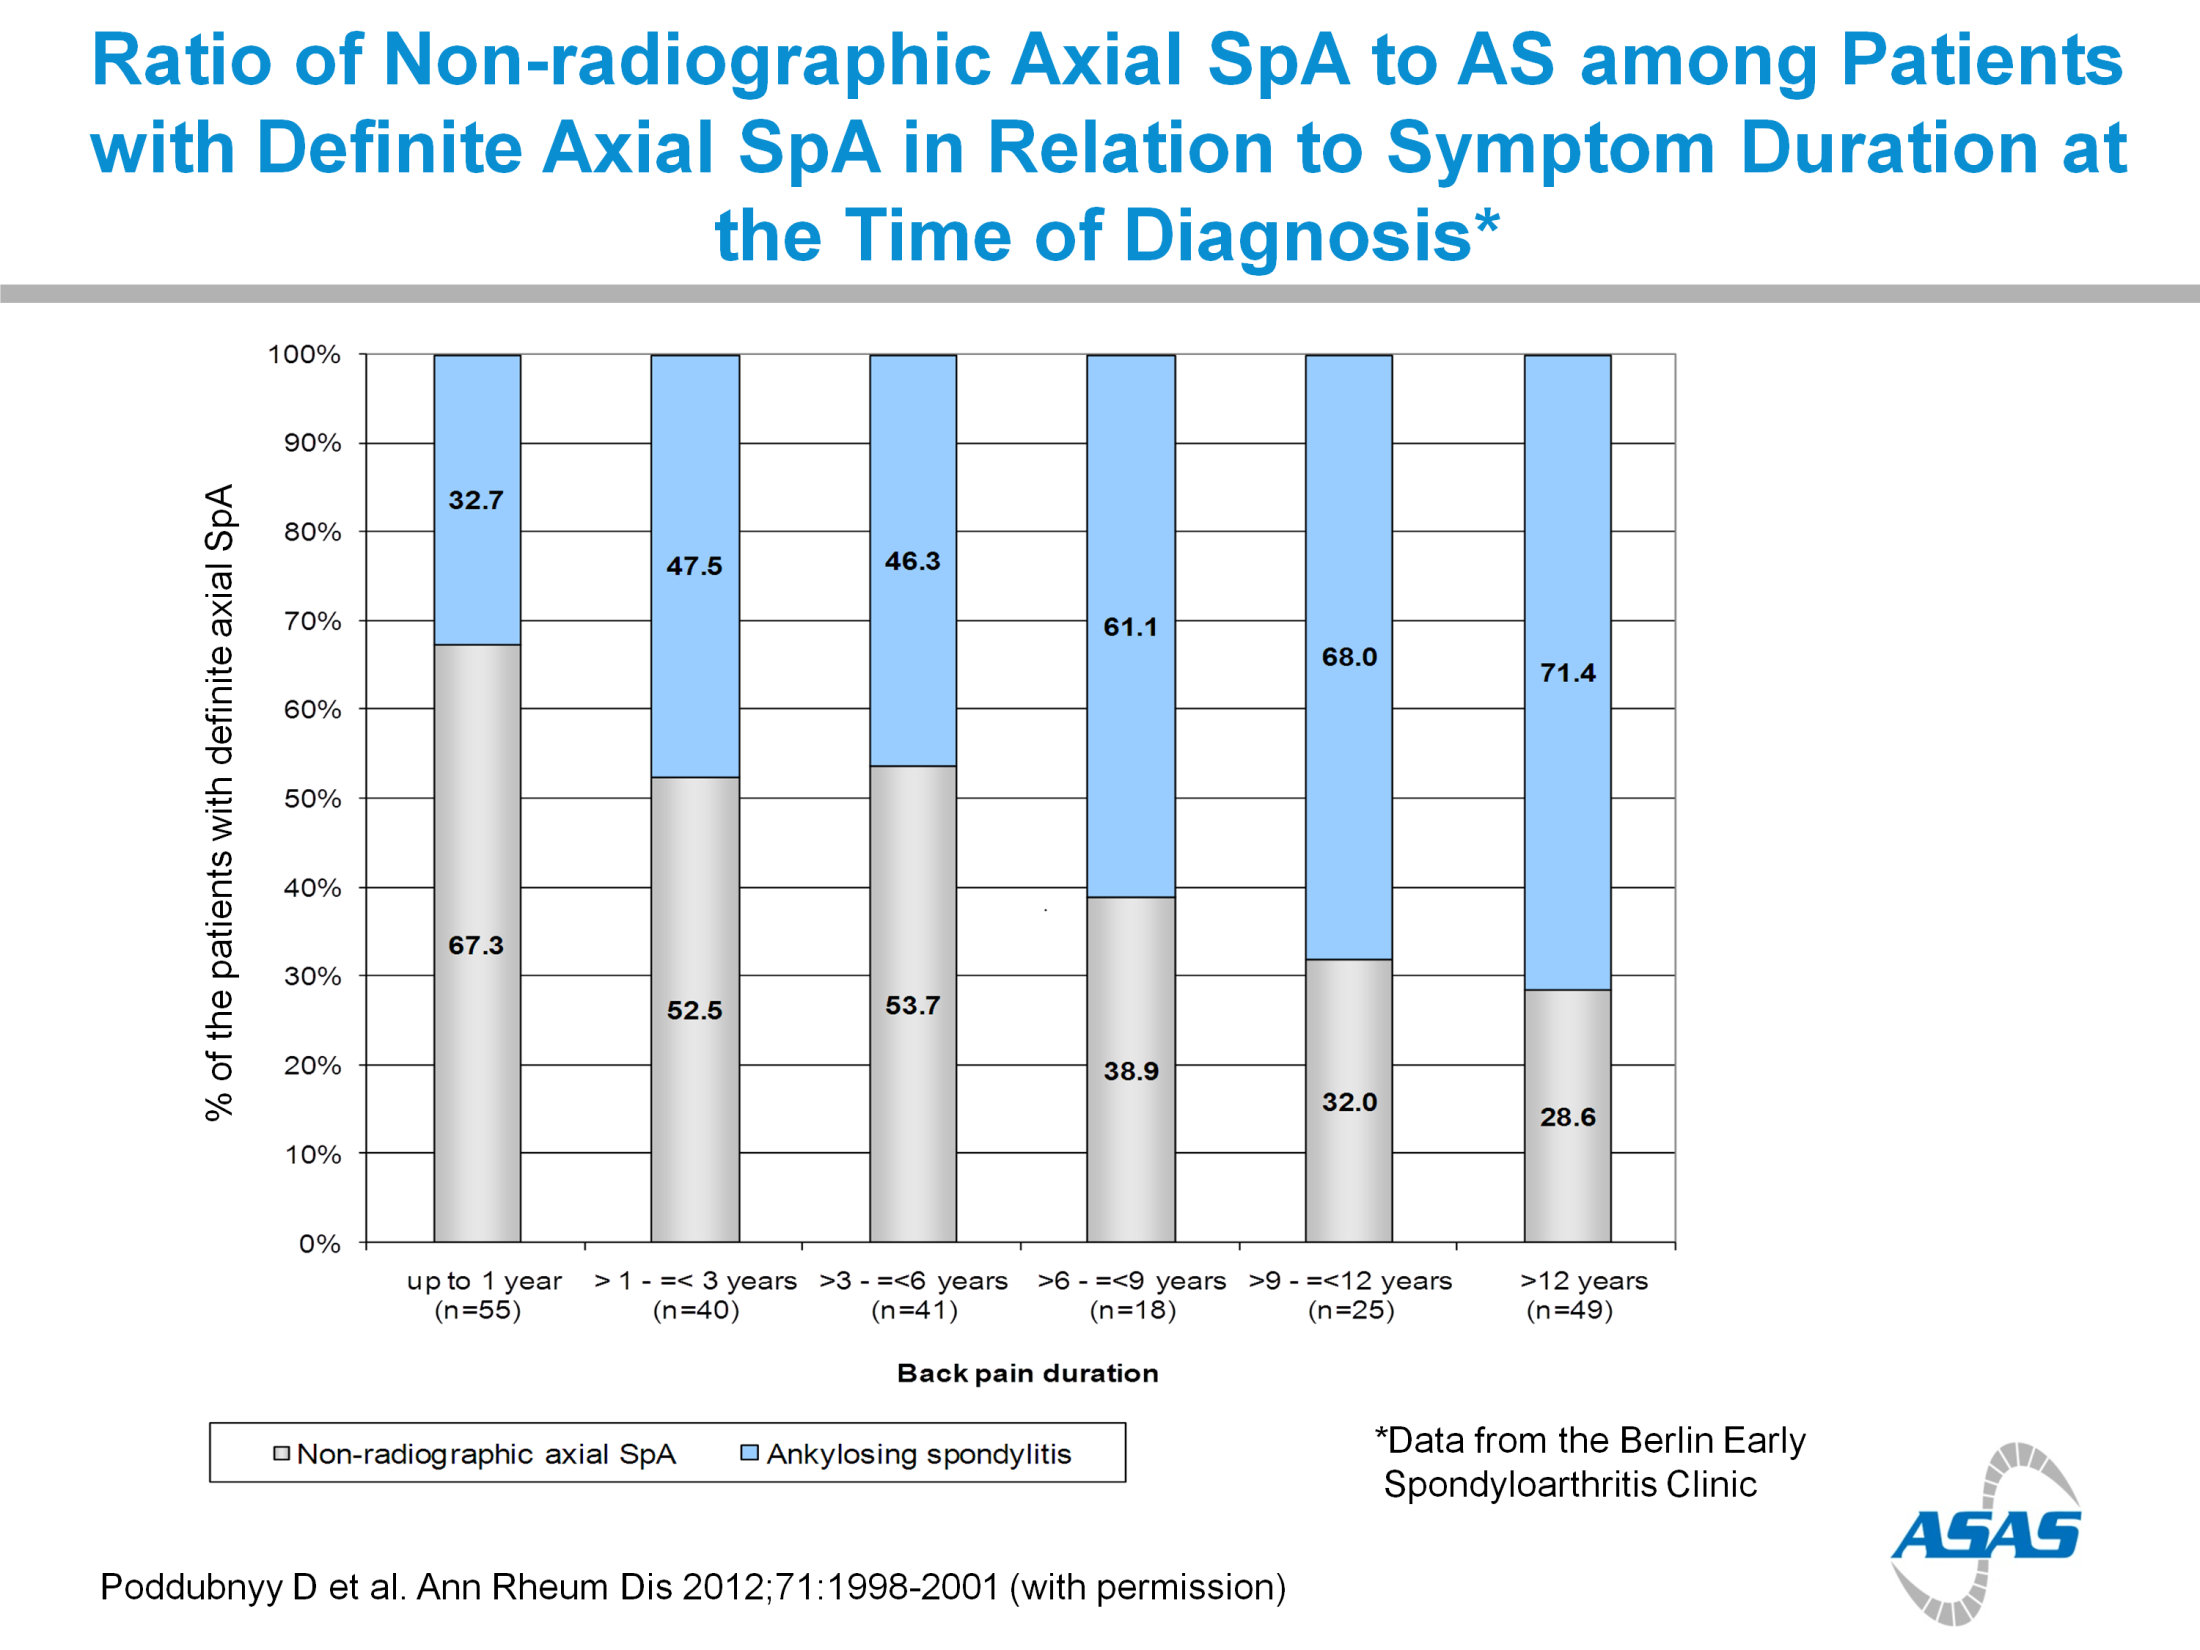 A nr-ax SpA és SPA aránya az axiális SpA-ban szenvedő betegek körében (A diagnózis megállapításakor észlelt tüneti fennállás függvényében) Definitív axiális